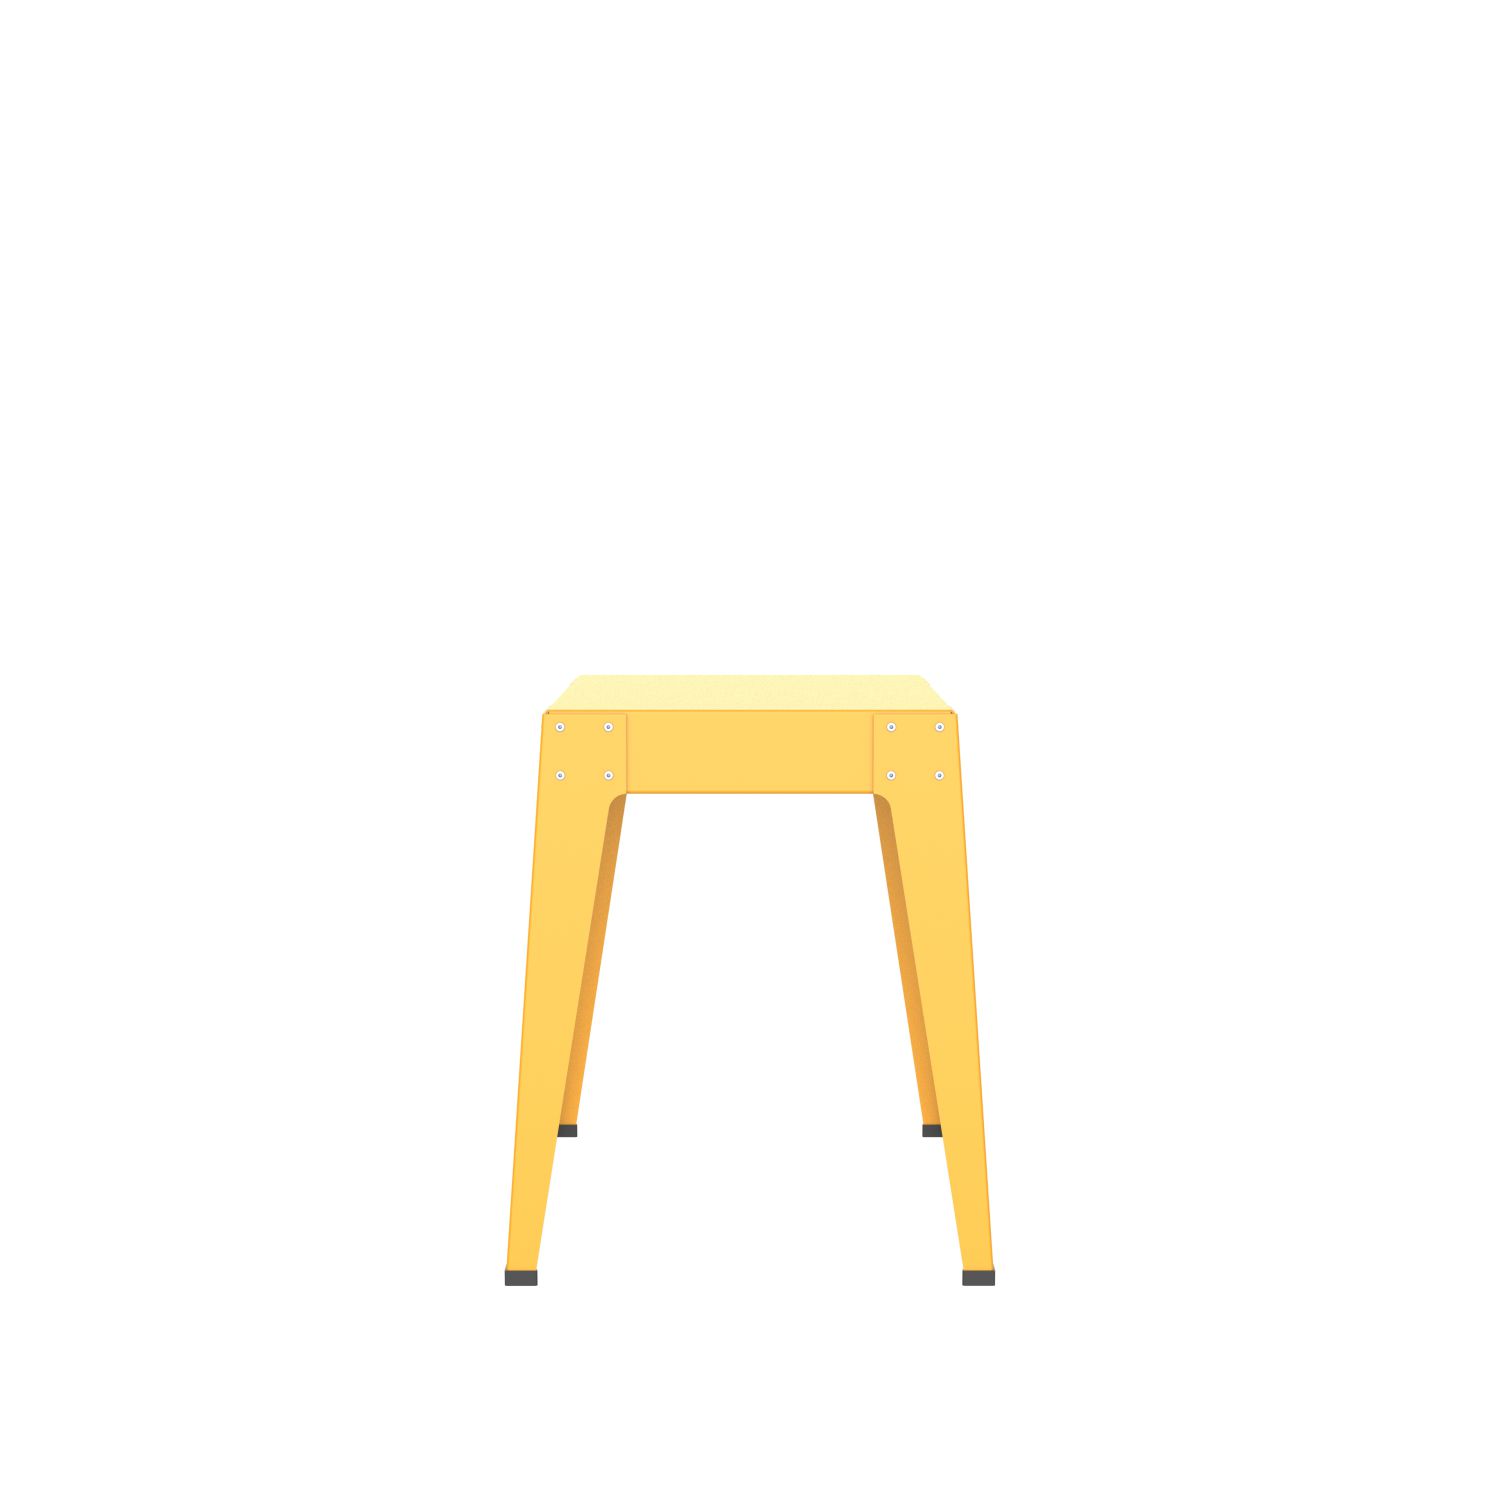 lensvelt piet hein eek aluminium series stool signal yellow ral1003 soft leg ends